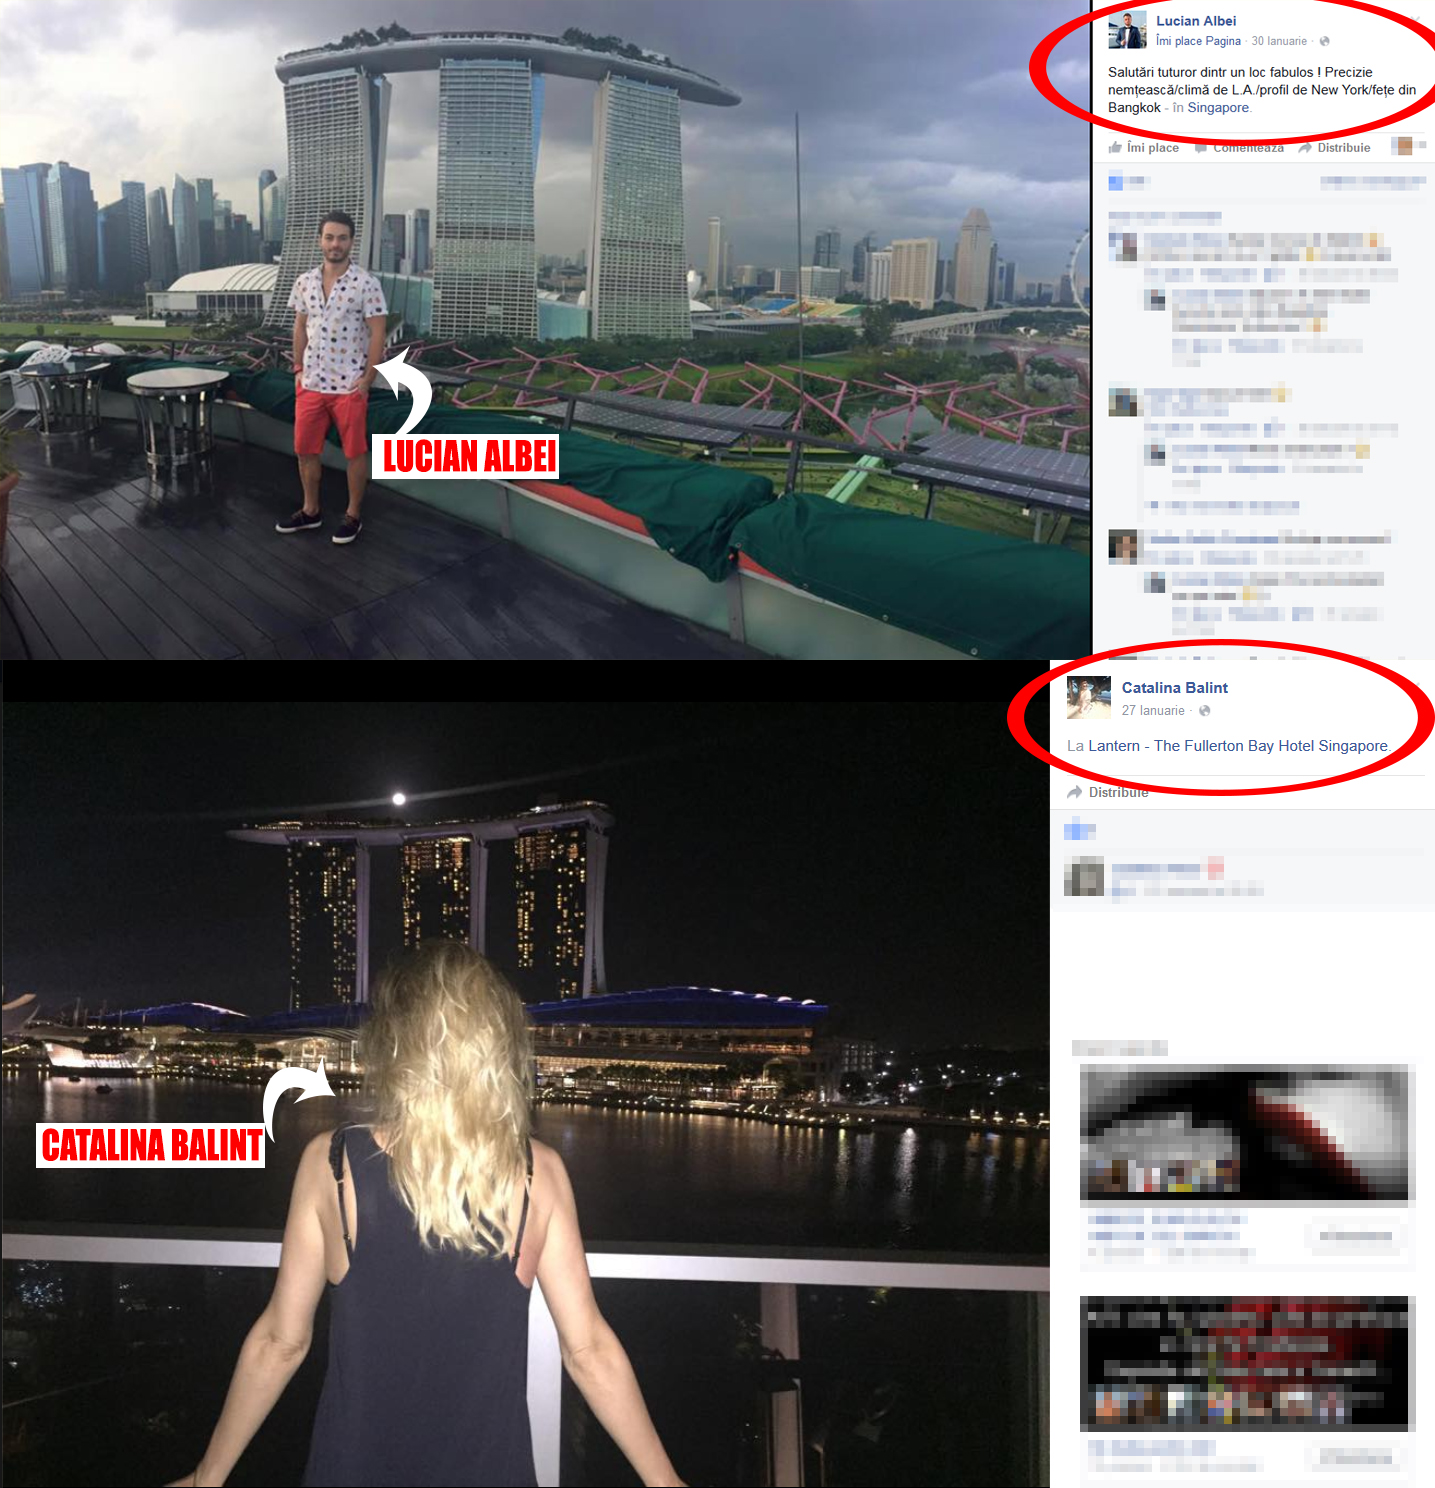 La sfârşitul lunii ianuarie a acestui an, la interval de doar trei zile, Cătălina şi Lucian au postat poze cu ei, din Singapore, având în plan secund acelaşi ”tablou urban”